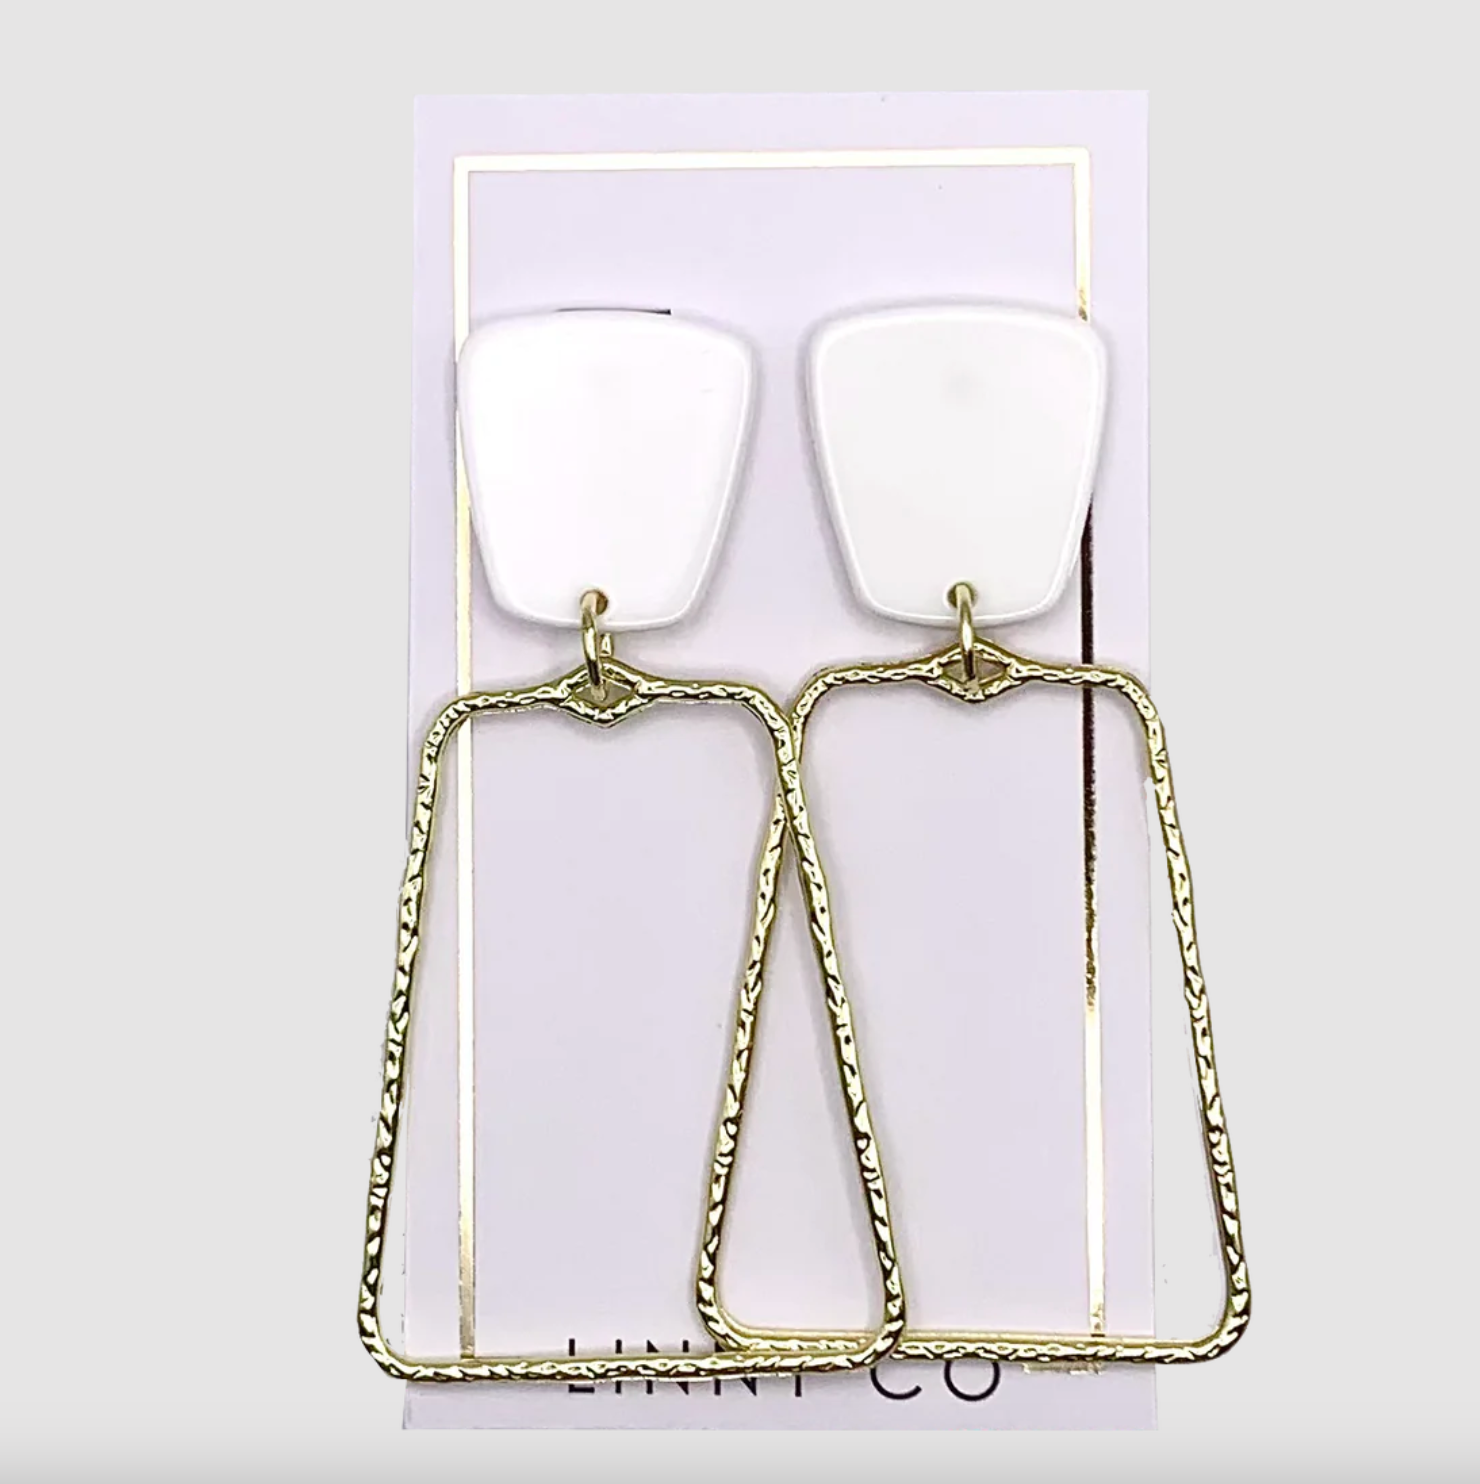 Kaelyn Gold Earring Earrings in White at Wrapsody